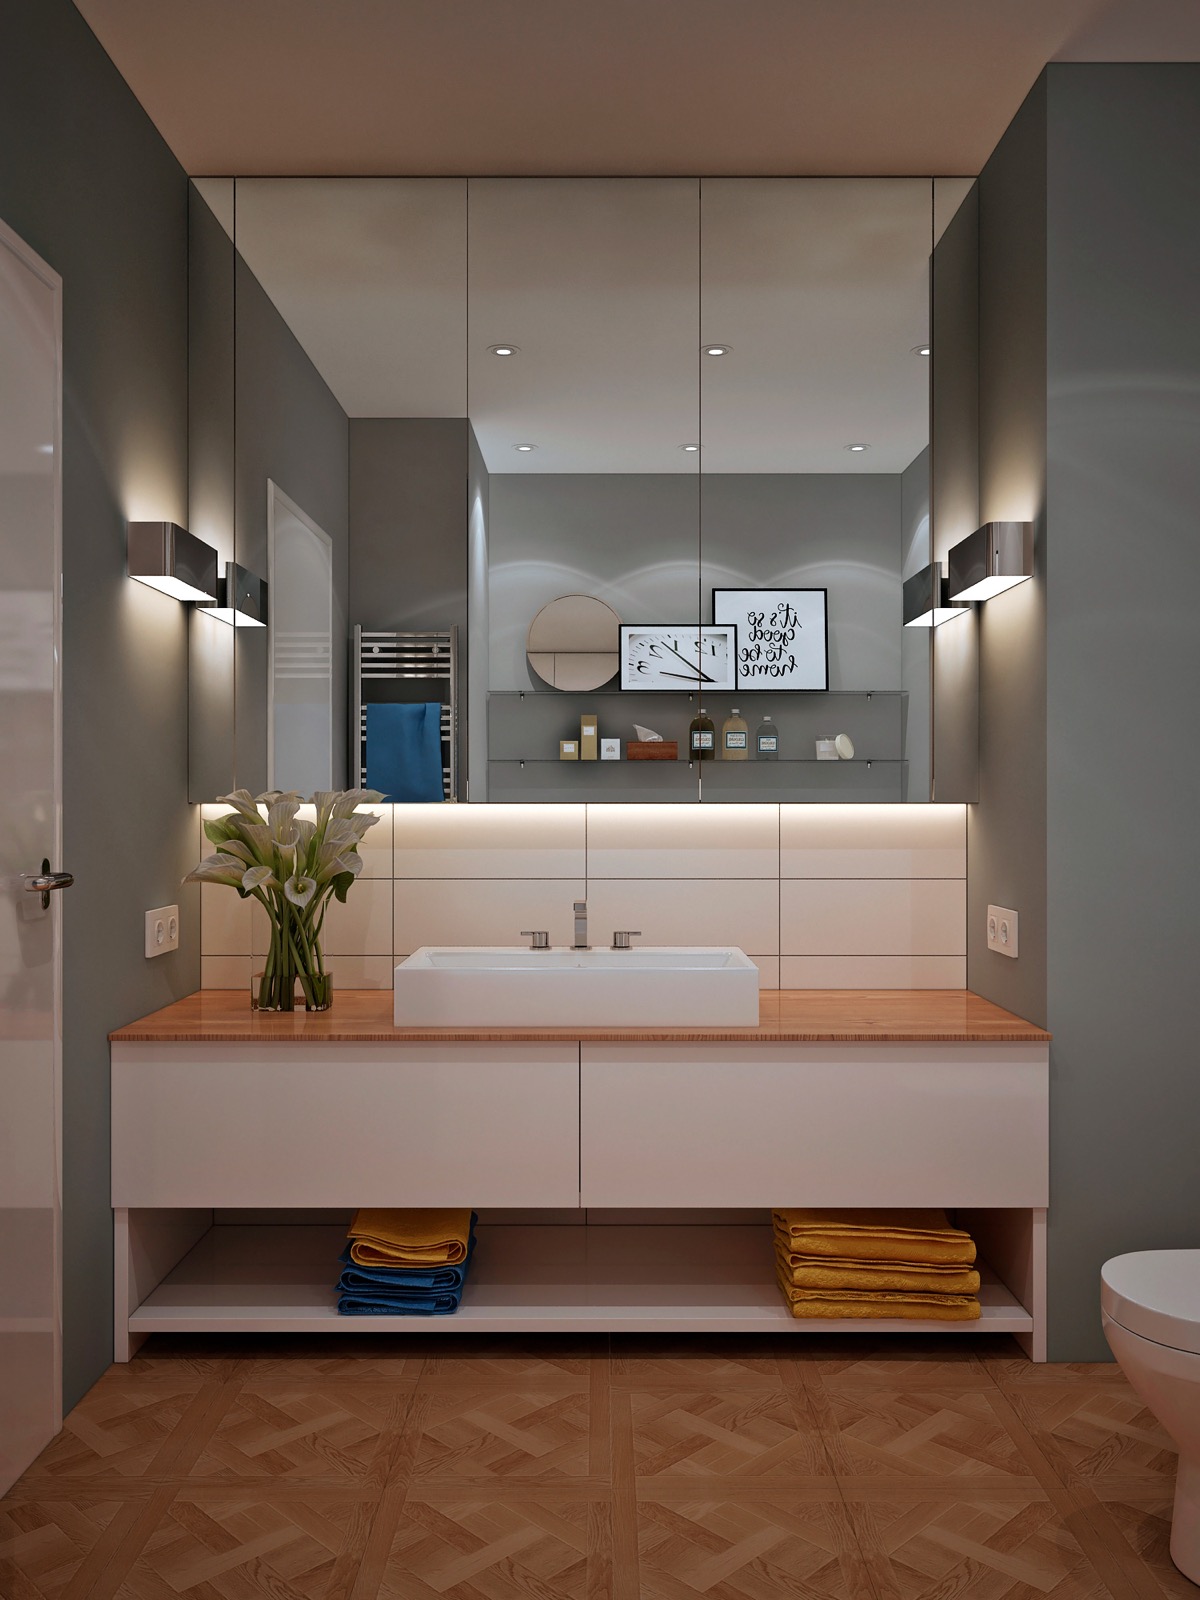 Không phải chủ nhân nào cũng thích vanity kết hợp bồn rửa gắn tường. Có người yêu phong cách truyền thống và chọn lựa mẫu tủ có kích thước cũng như thiết kế lưu trữ được nhiều nhất có thể.